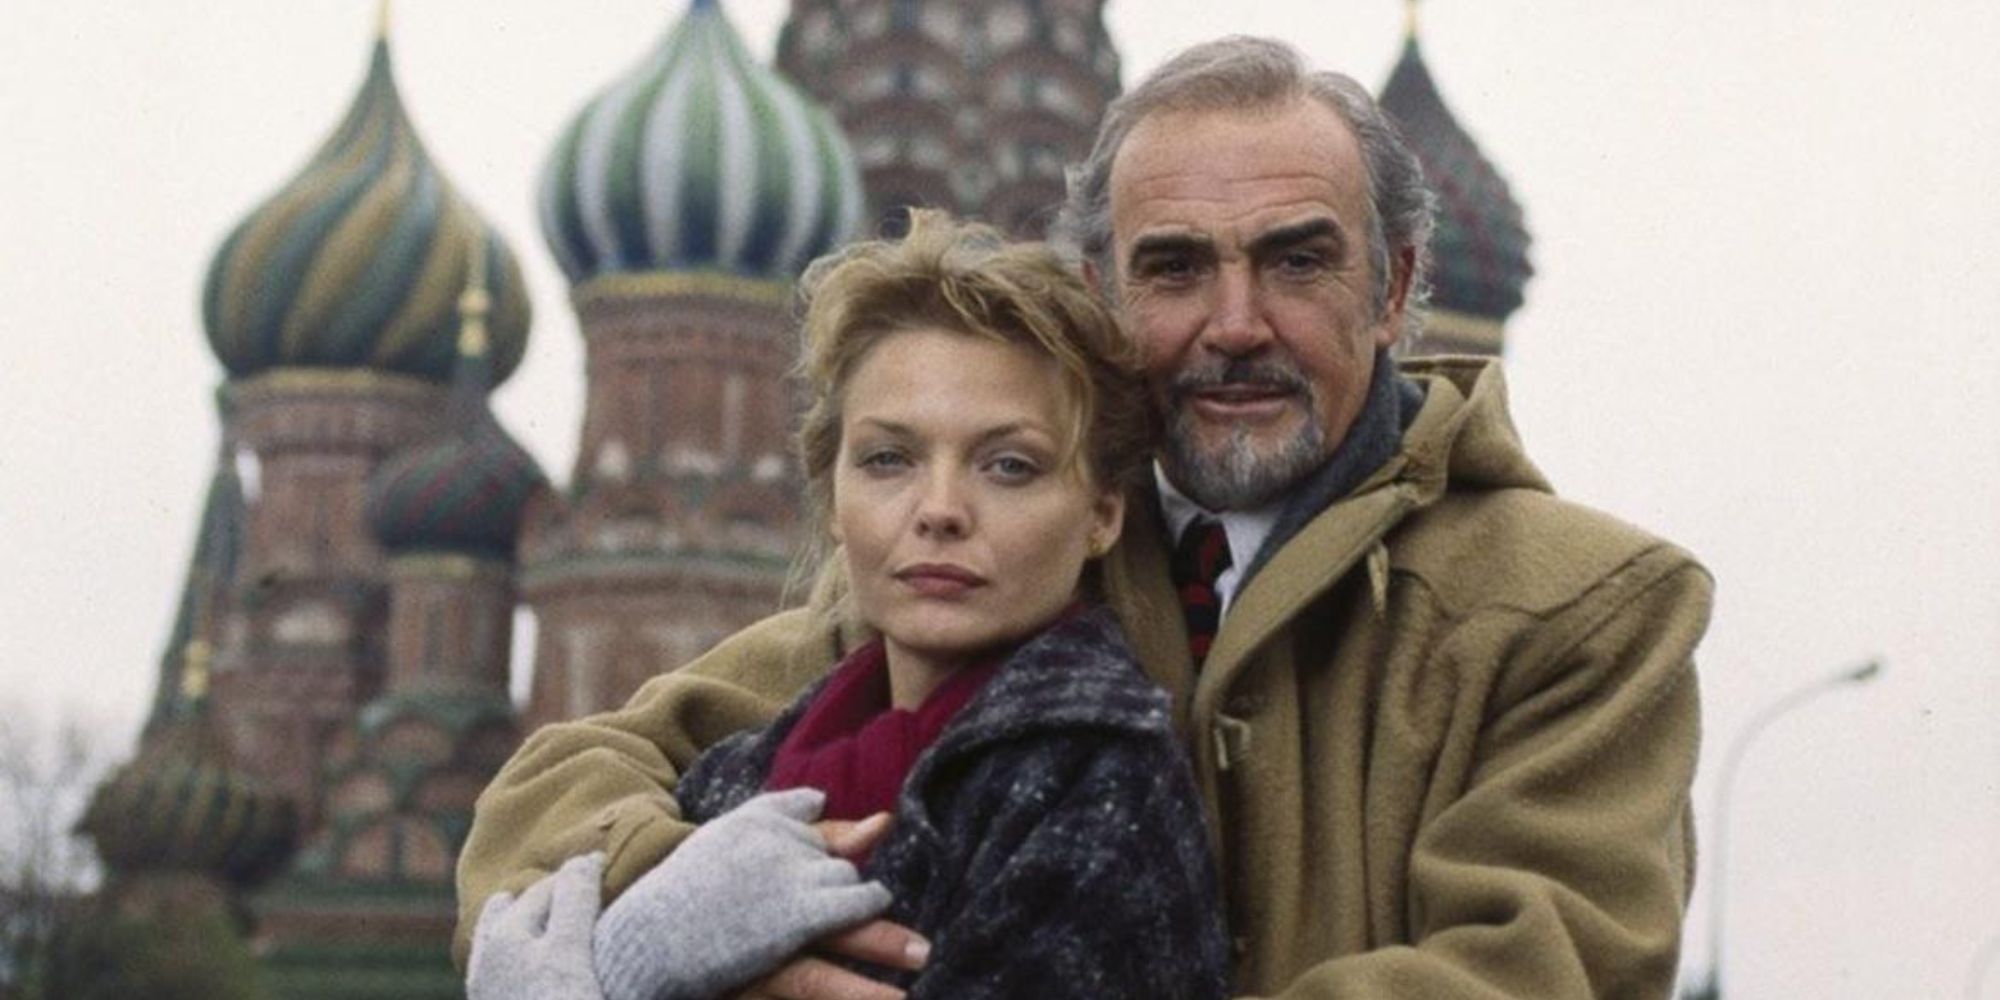 Photo publicitaire de 'The Russia House', avec Michelle Pfeiffer et Sean Connery devant la cathédrale Saint-Basile sur la Place Rouge, Moscou.